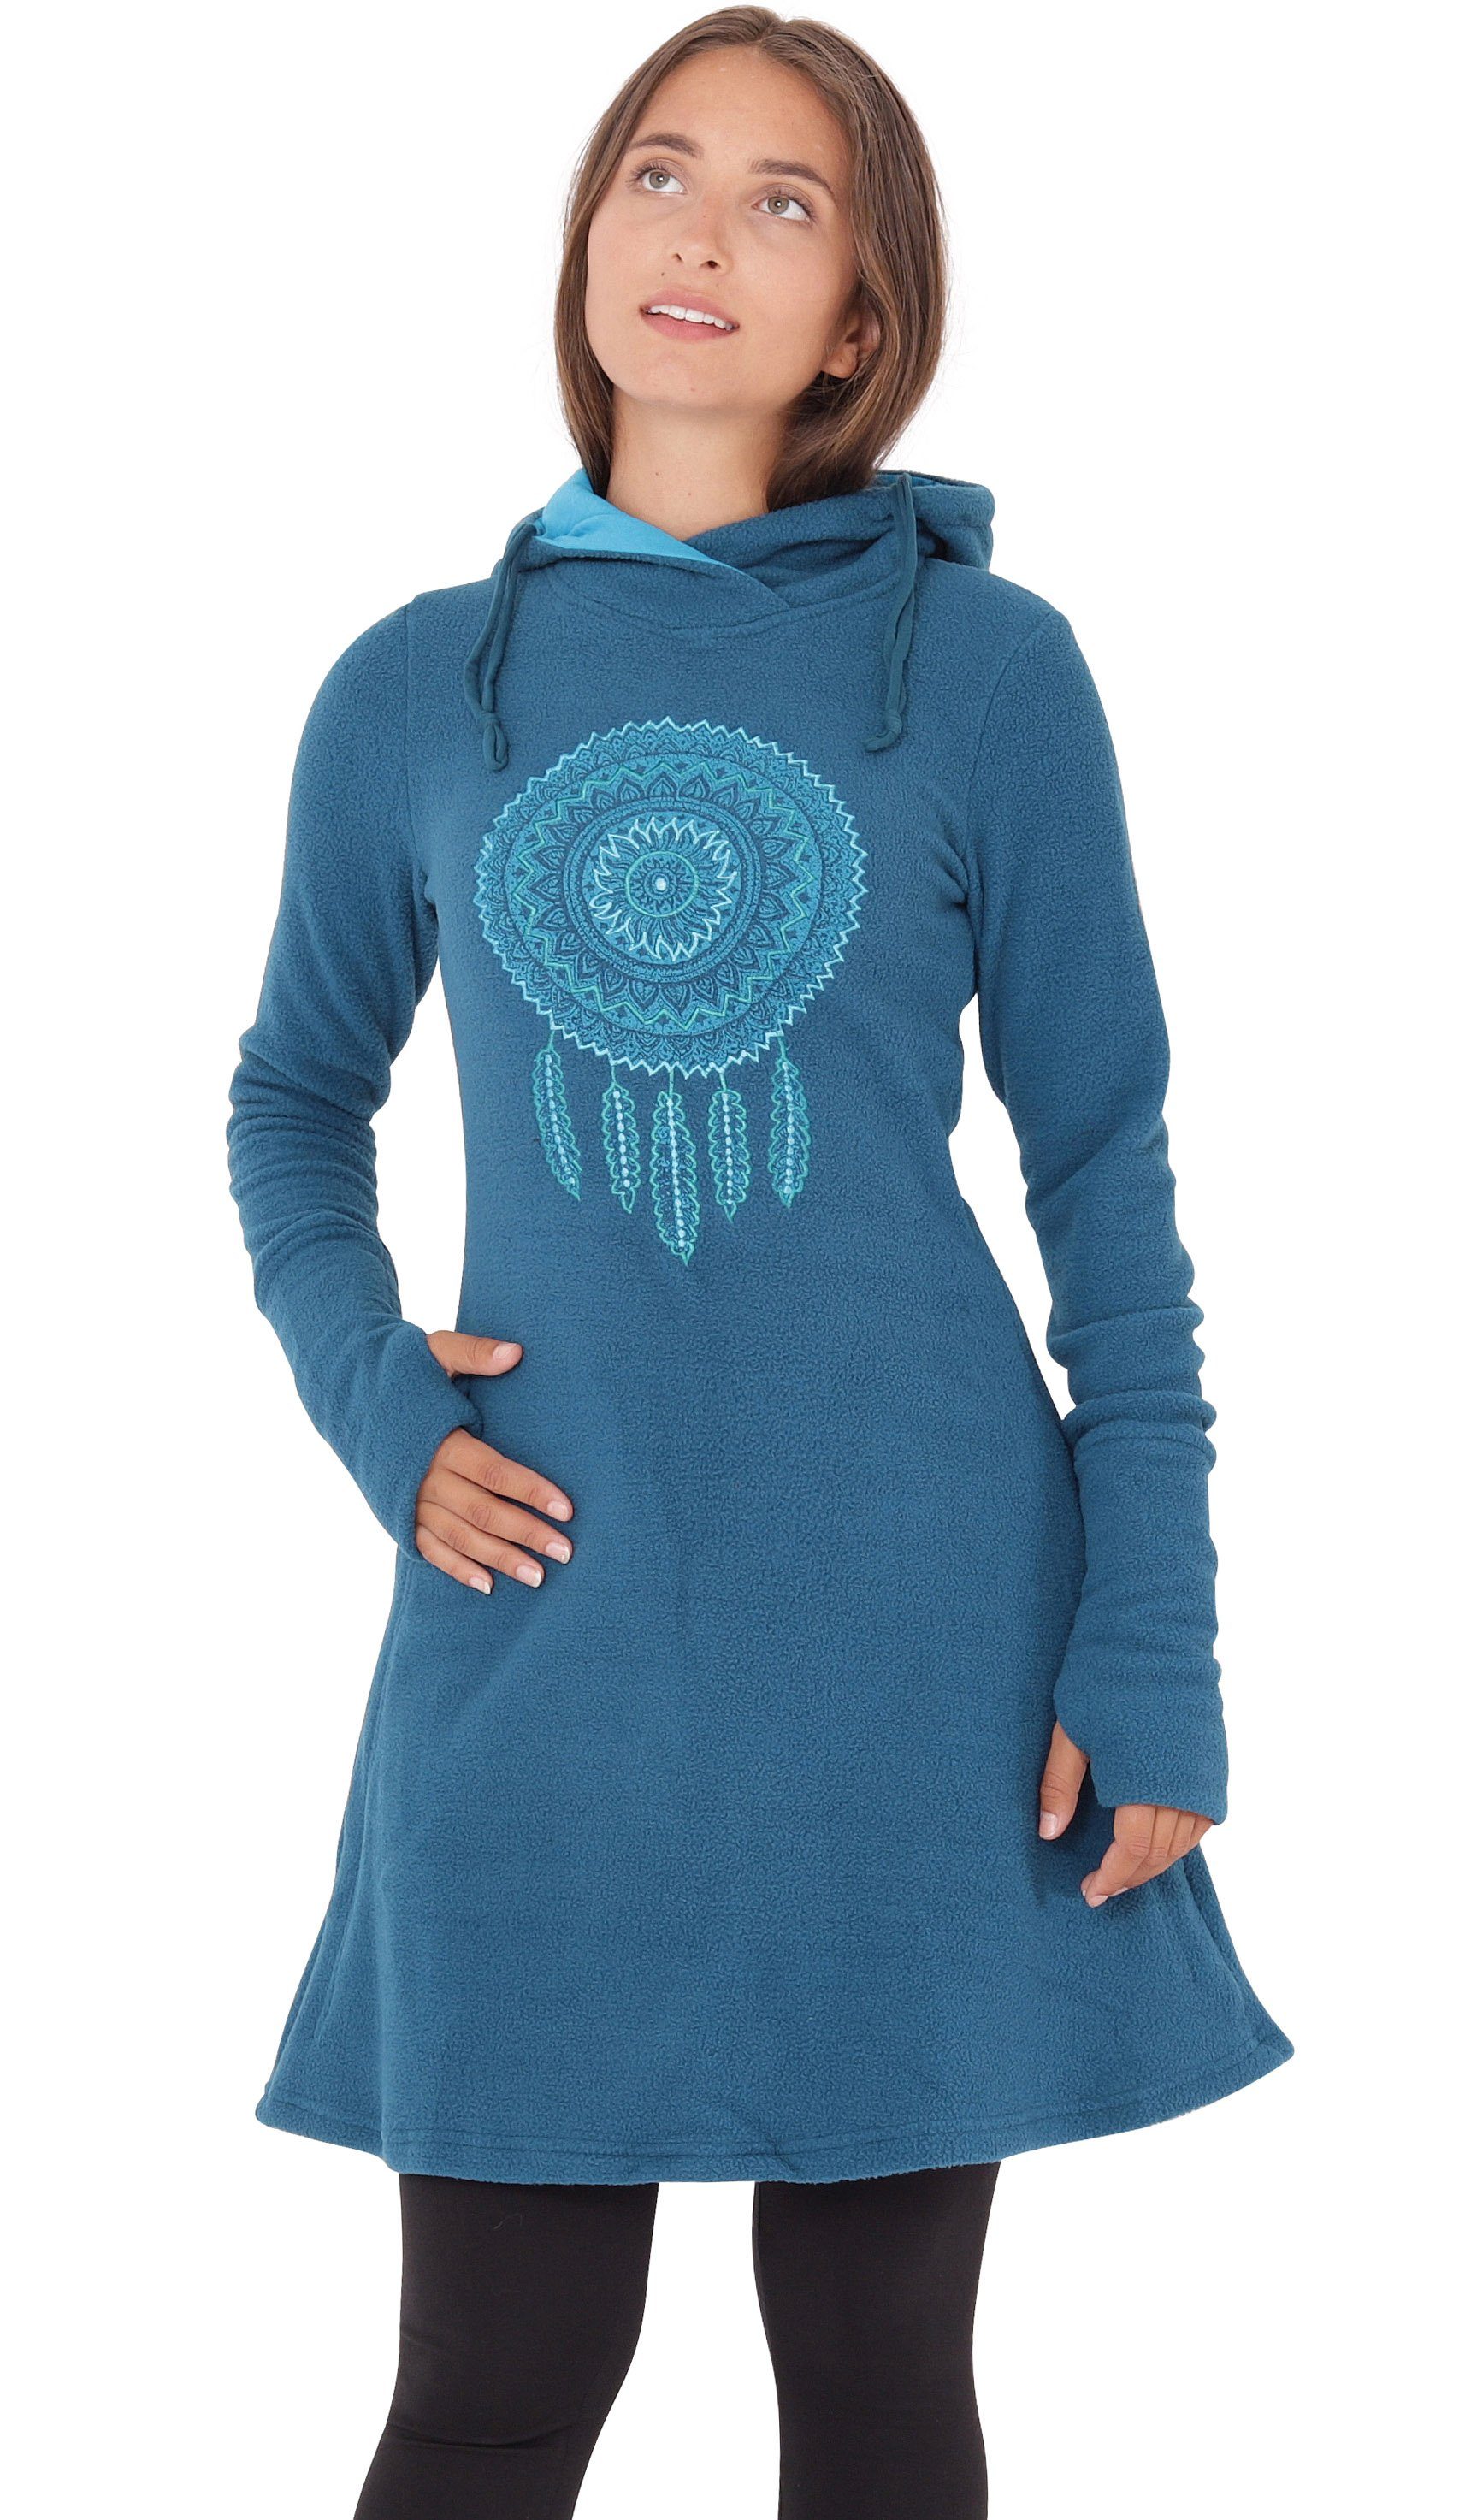 PUREWONDER A-Linien-Kleid Kapuzenkleid Winterkleid mit Traumfänger dr31 Fleece Blau